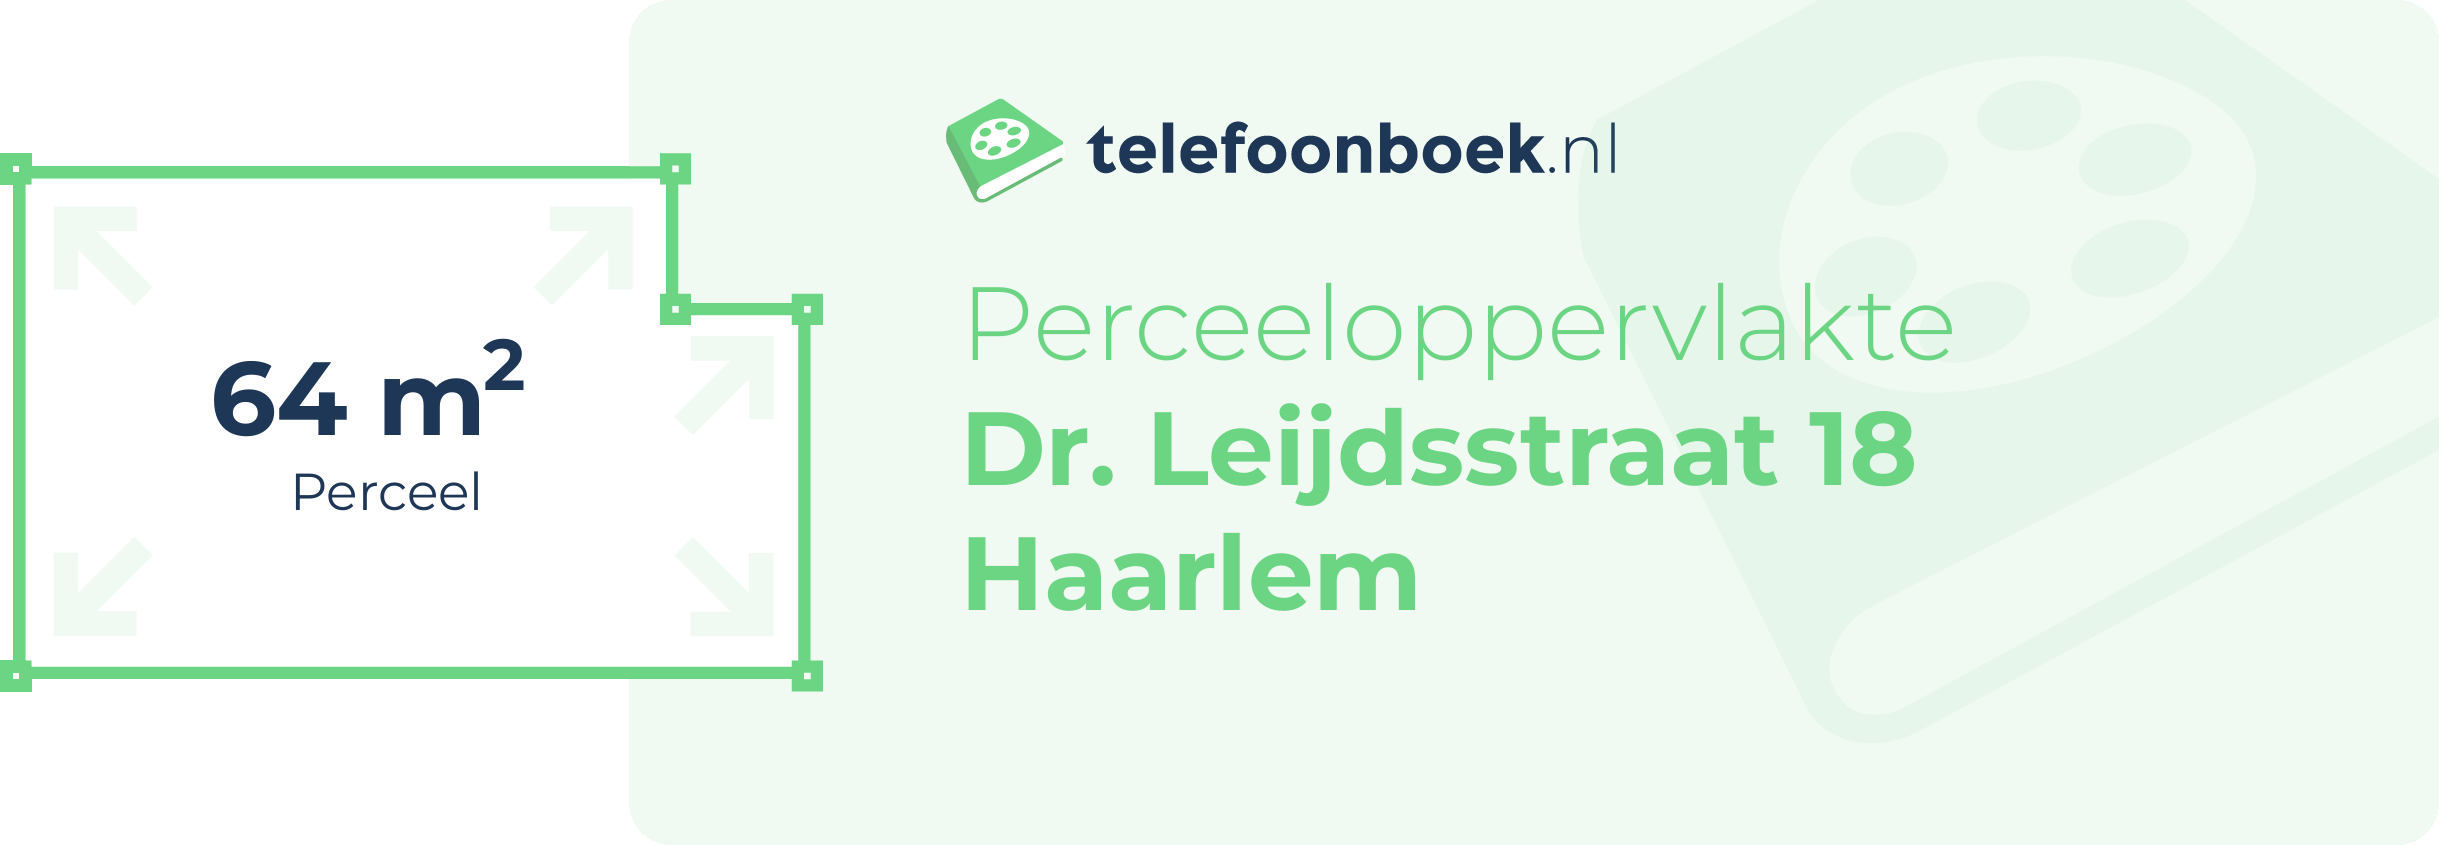 Perceeloppervlakte Dr. Leijdsstraat 18 Haarlem